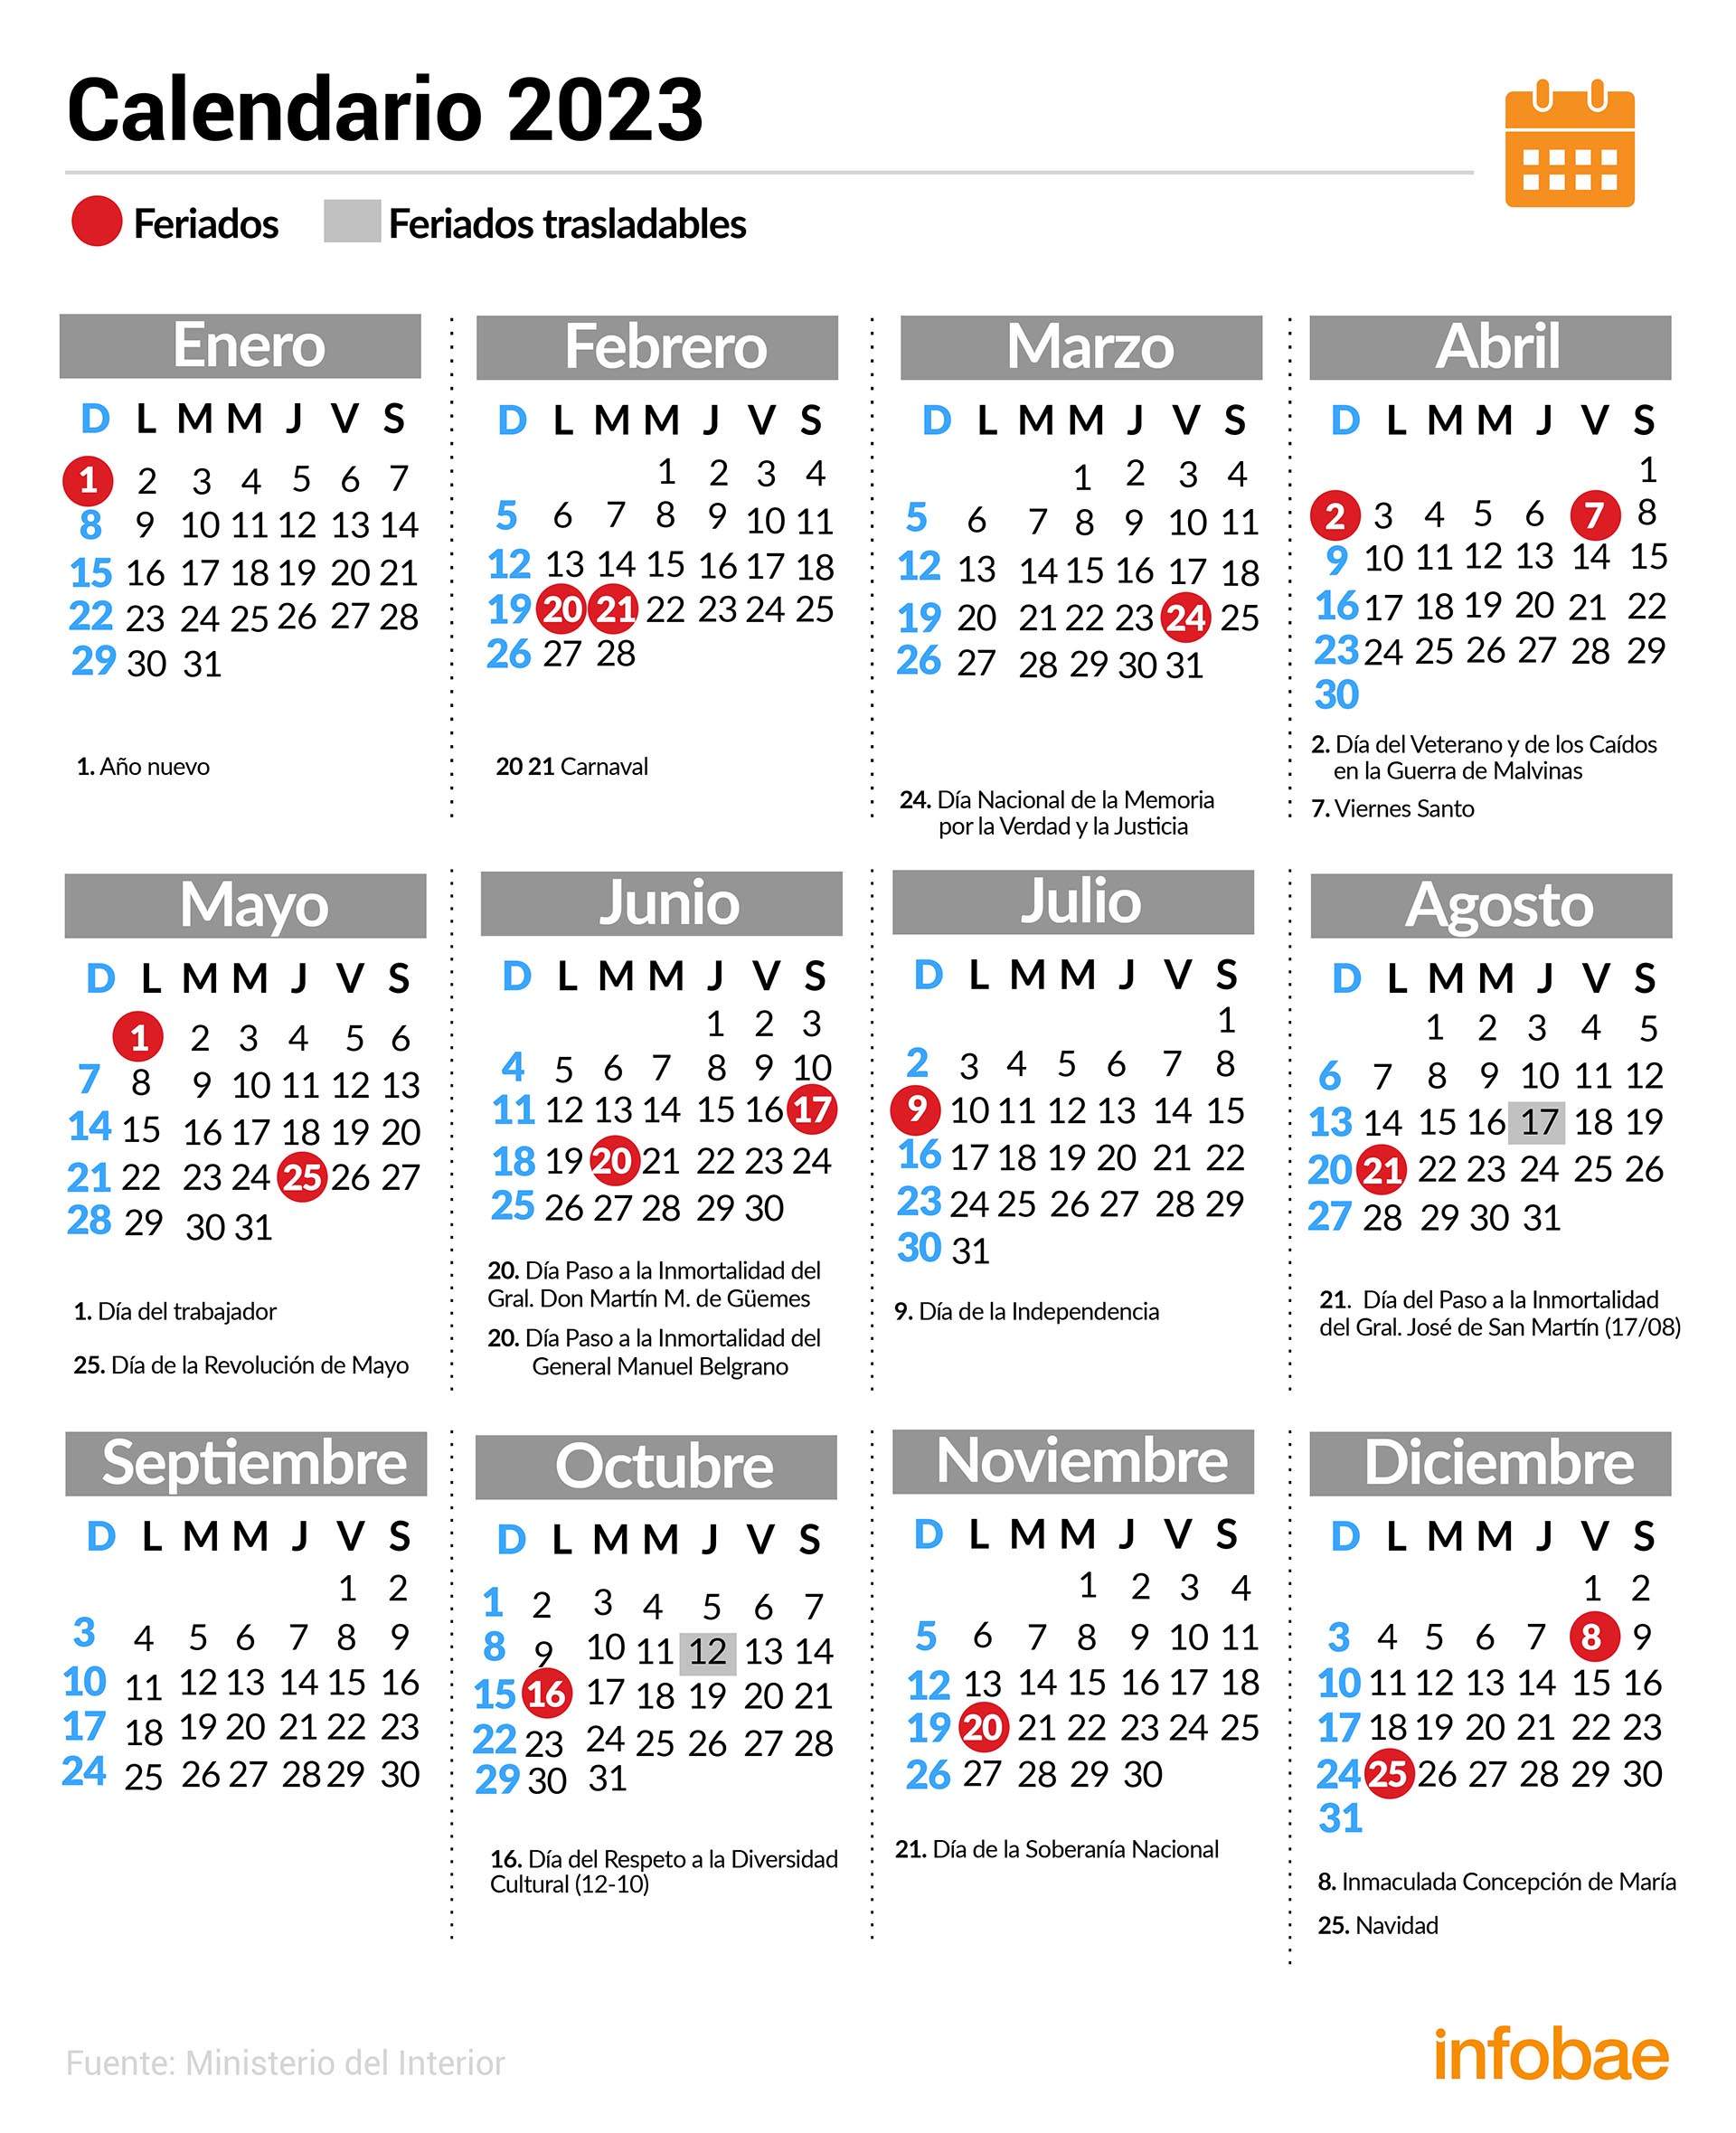 El calendario de feriados para este 2023